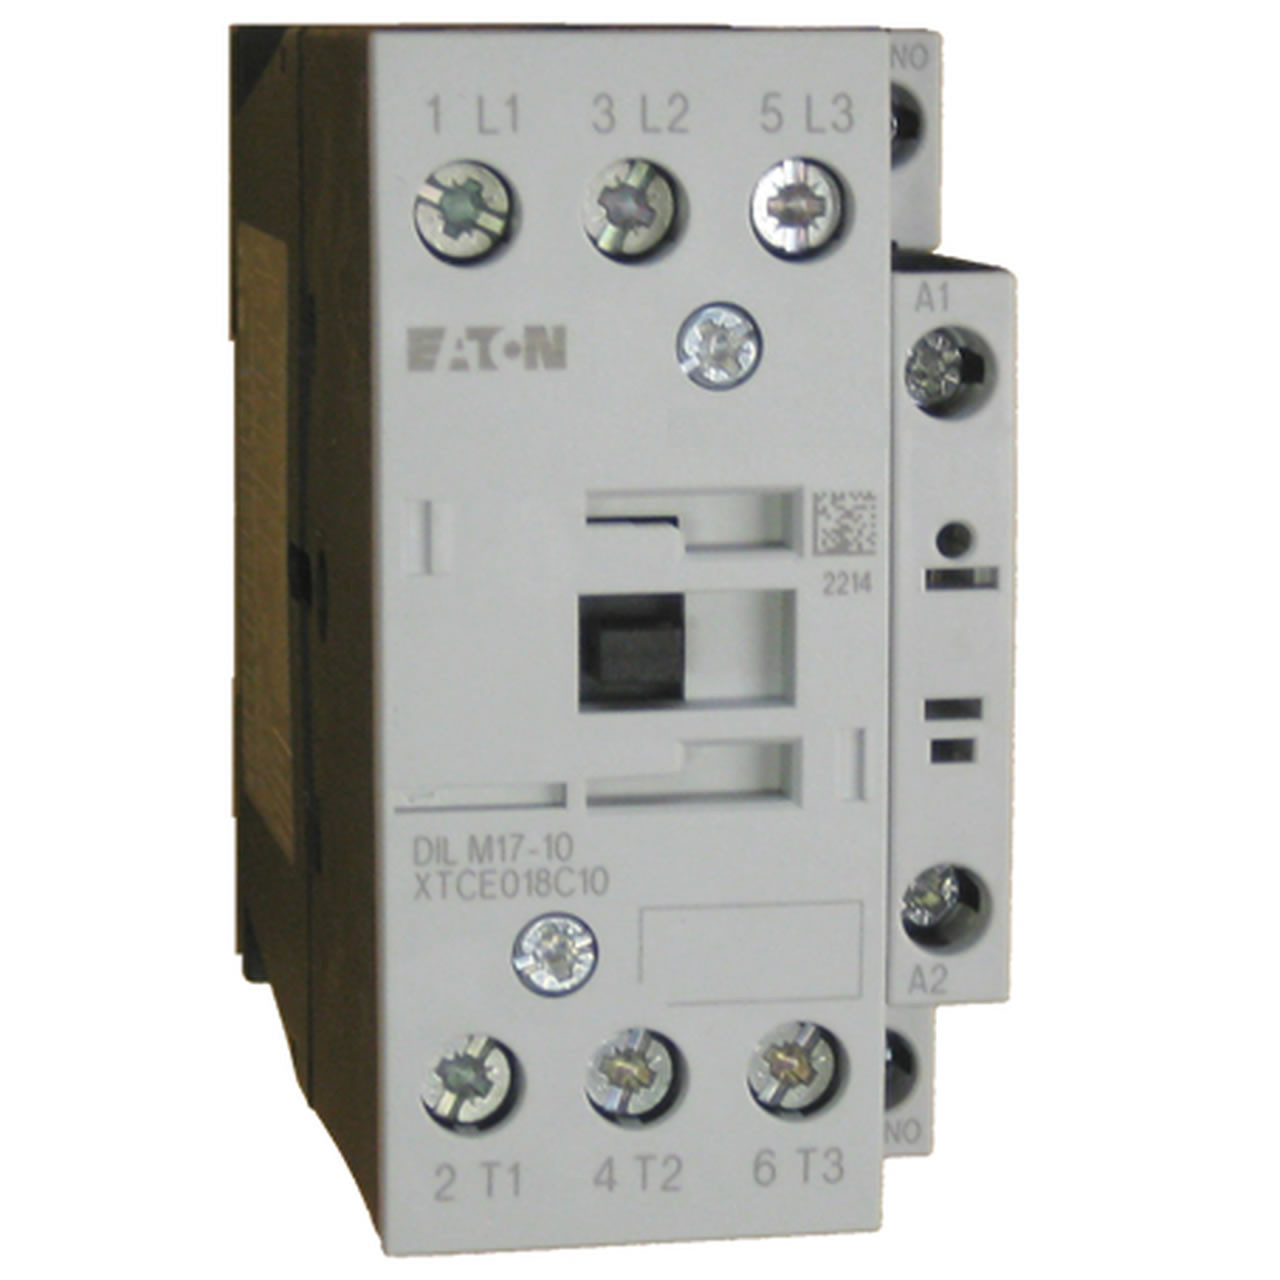 Eaton/Moeller DILM17-10 600 volt contactor